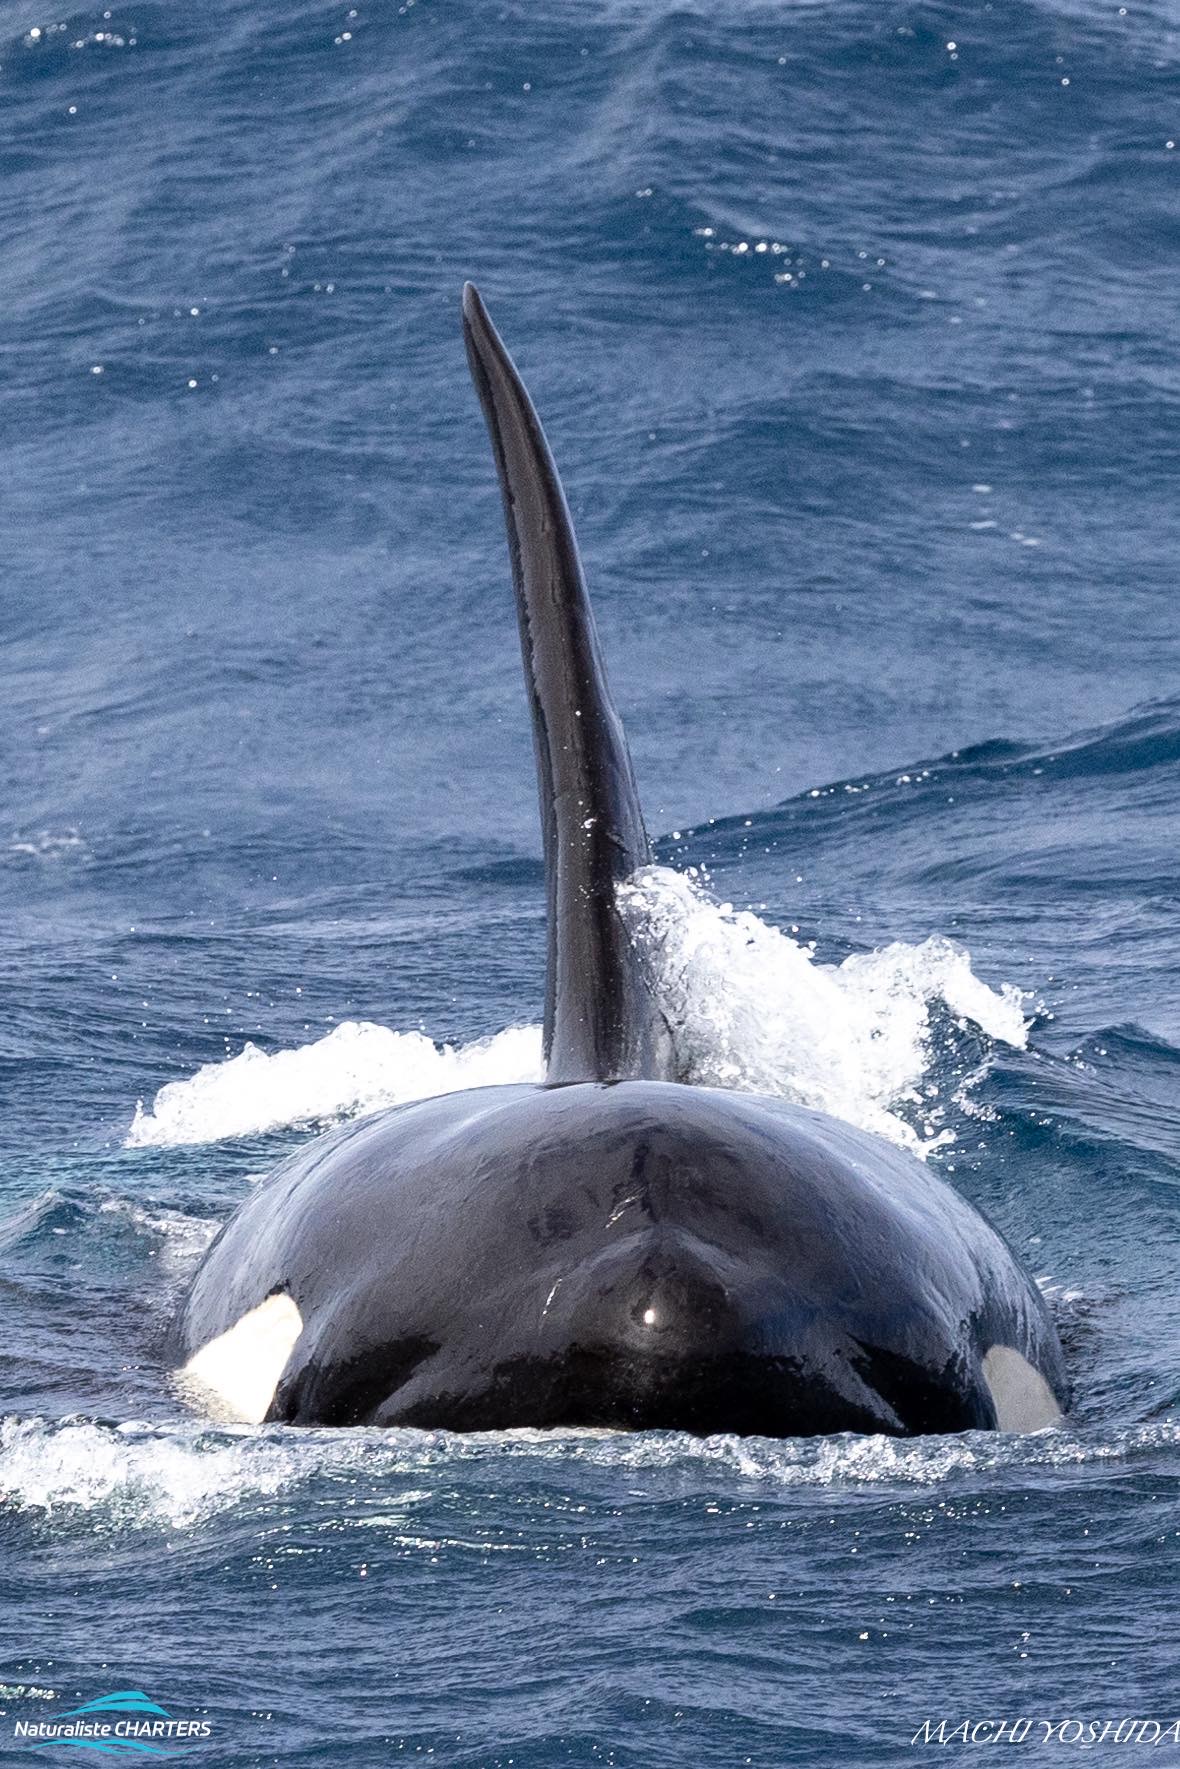 Killer whales hunt in pods